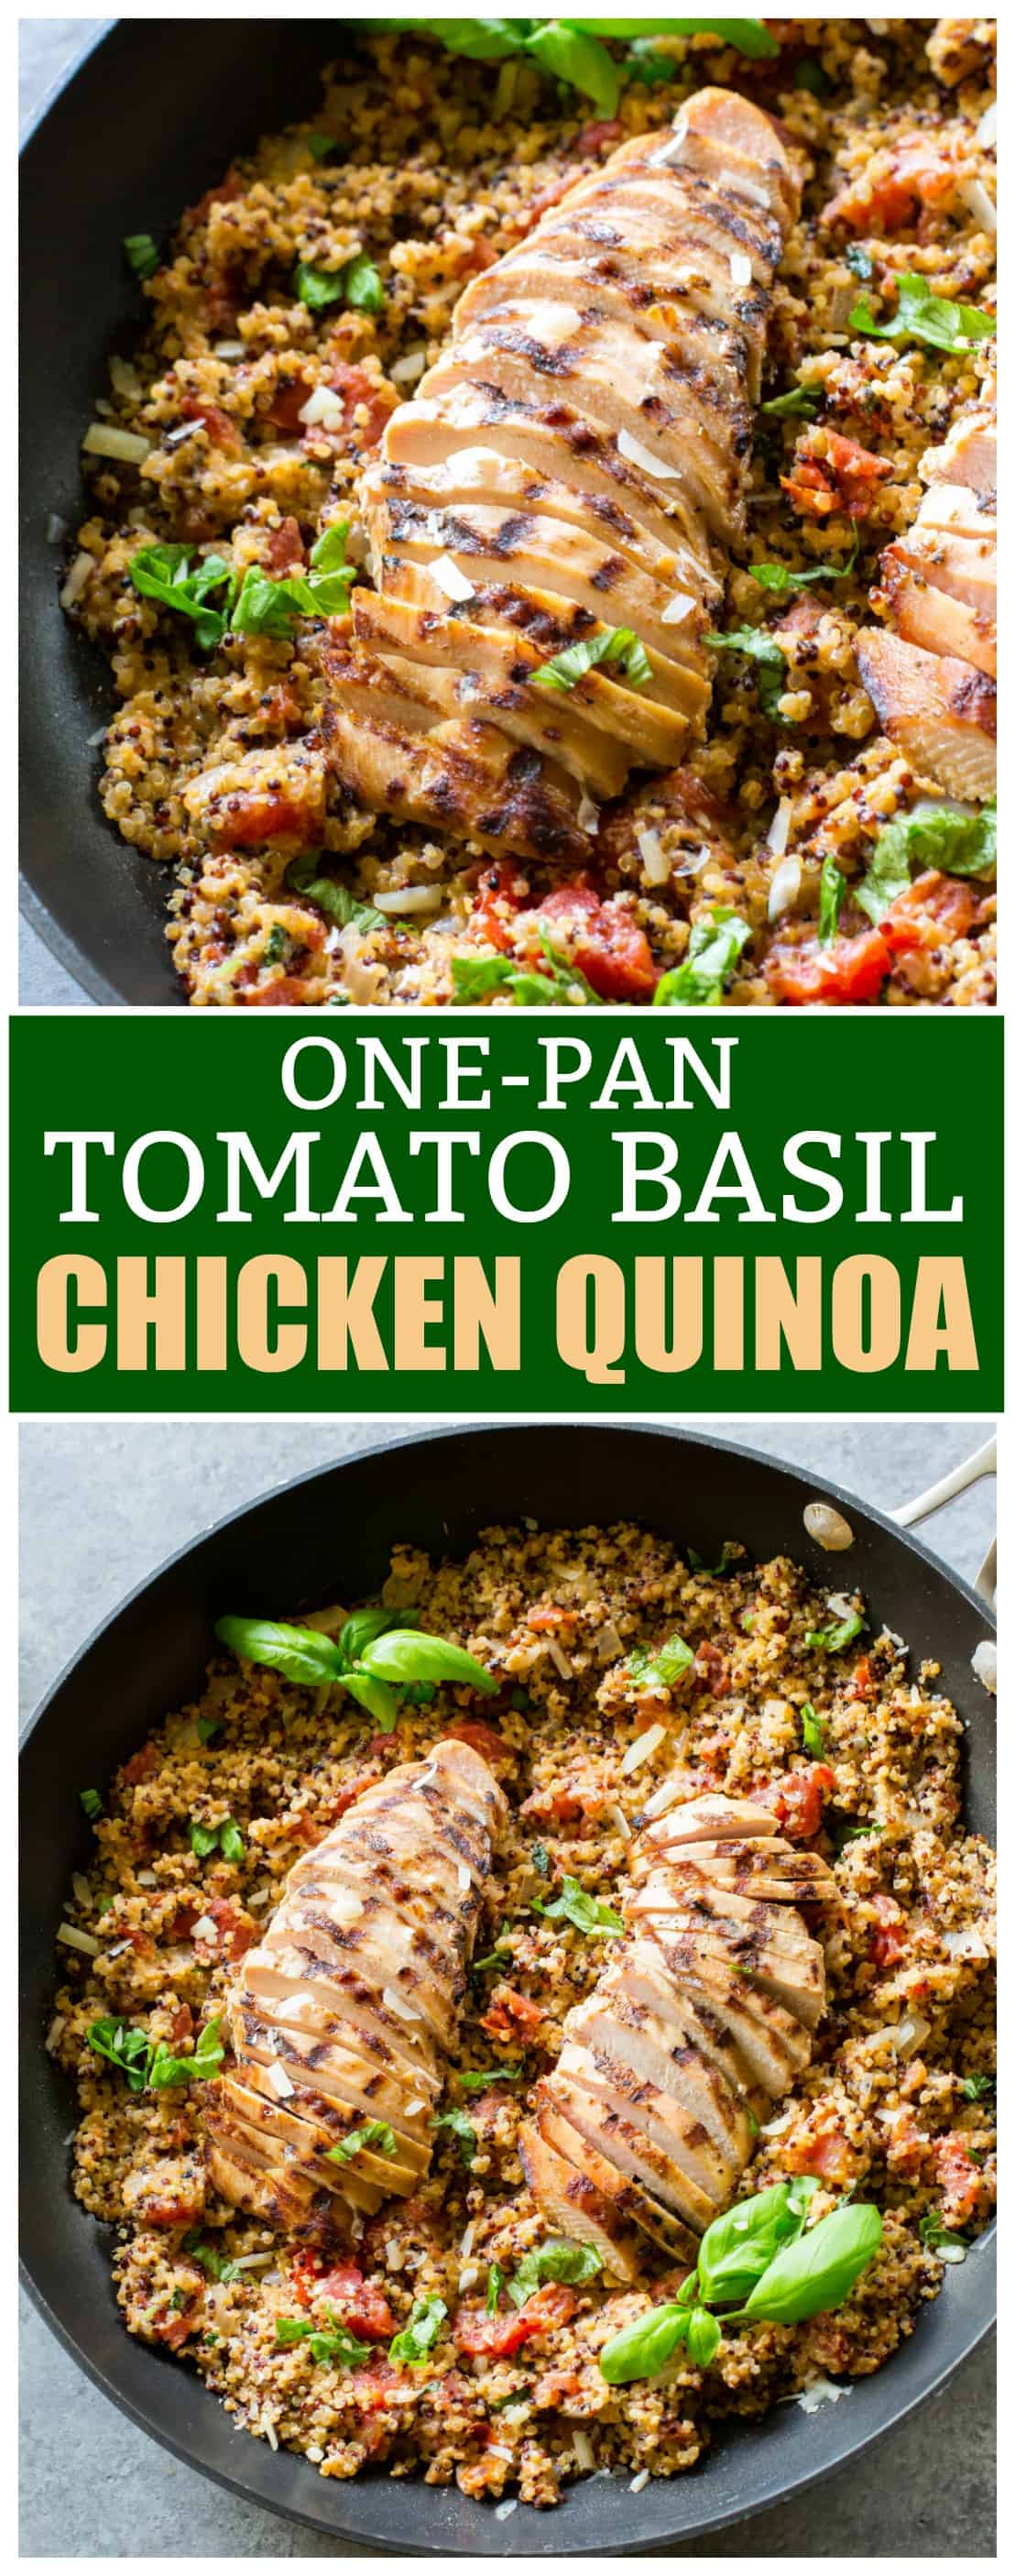 Tomato Basil Chicken Quinoa